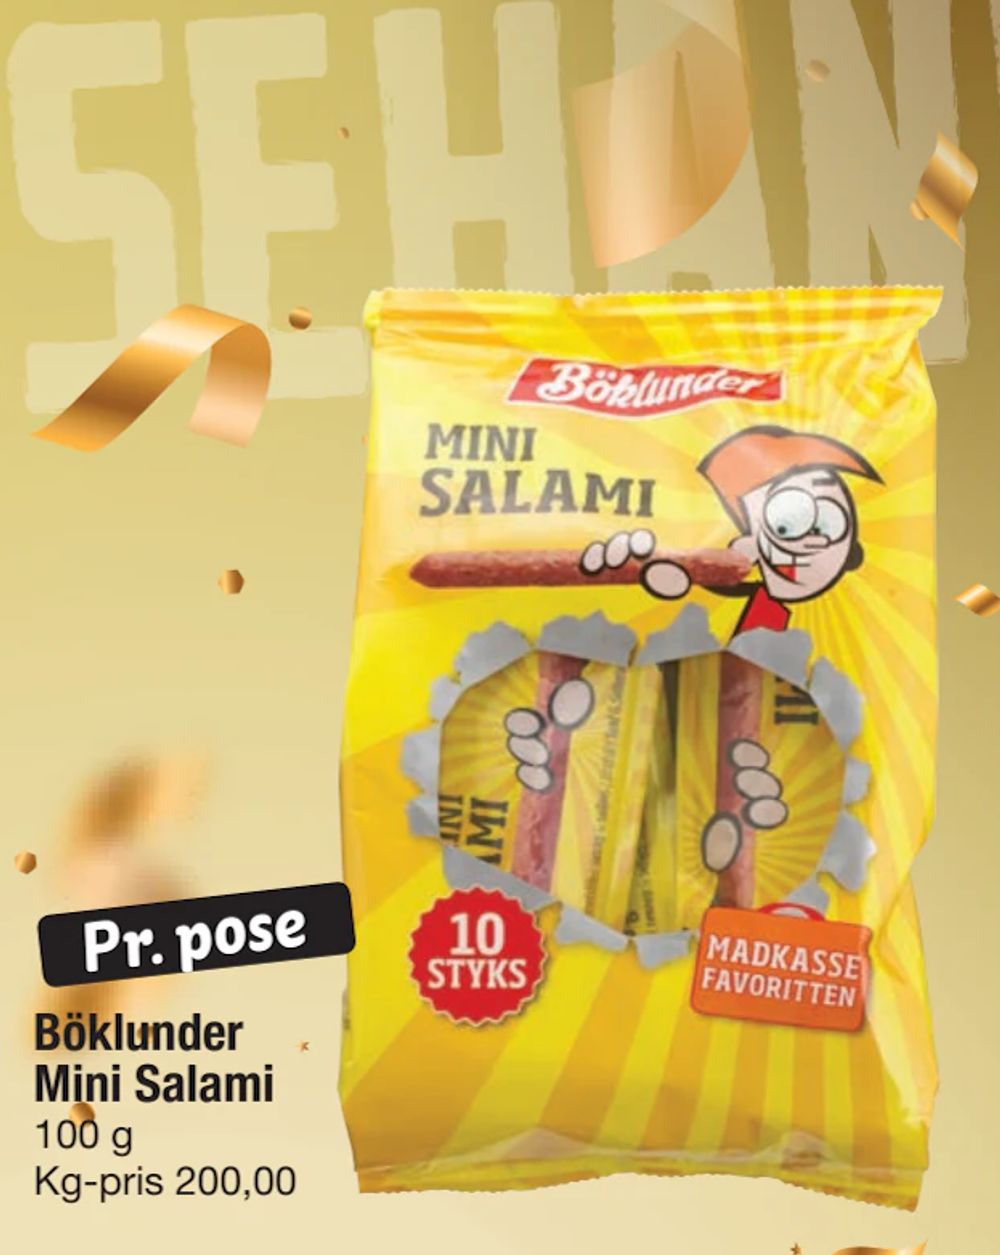 Tilbud på Böklunder Mini Salami fra fakta Tyskland til 20 kr.